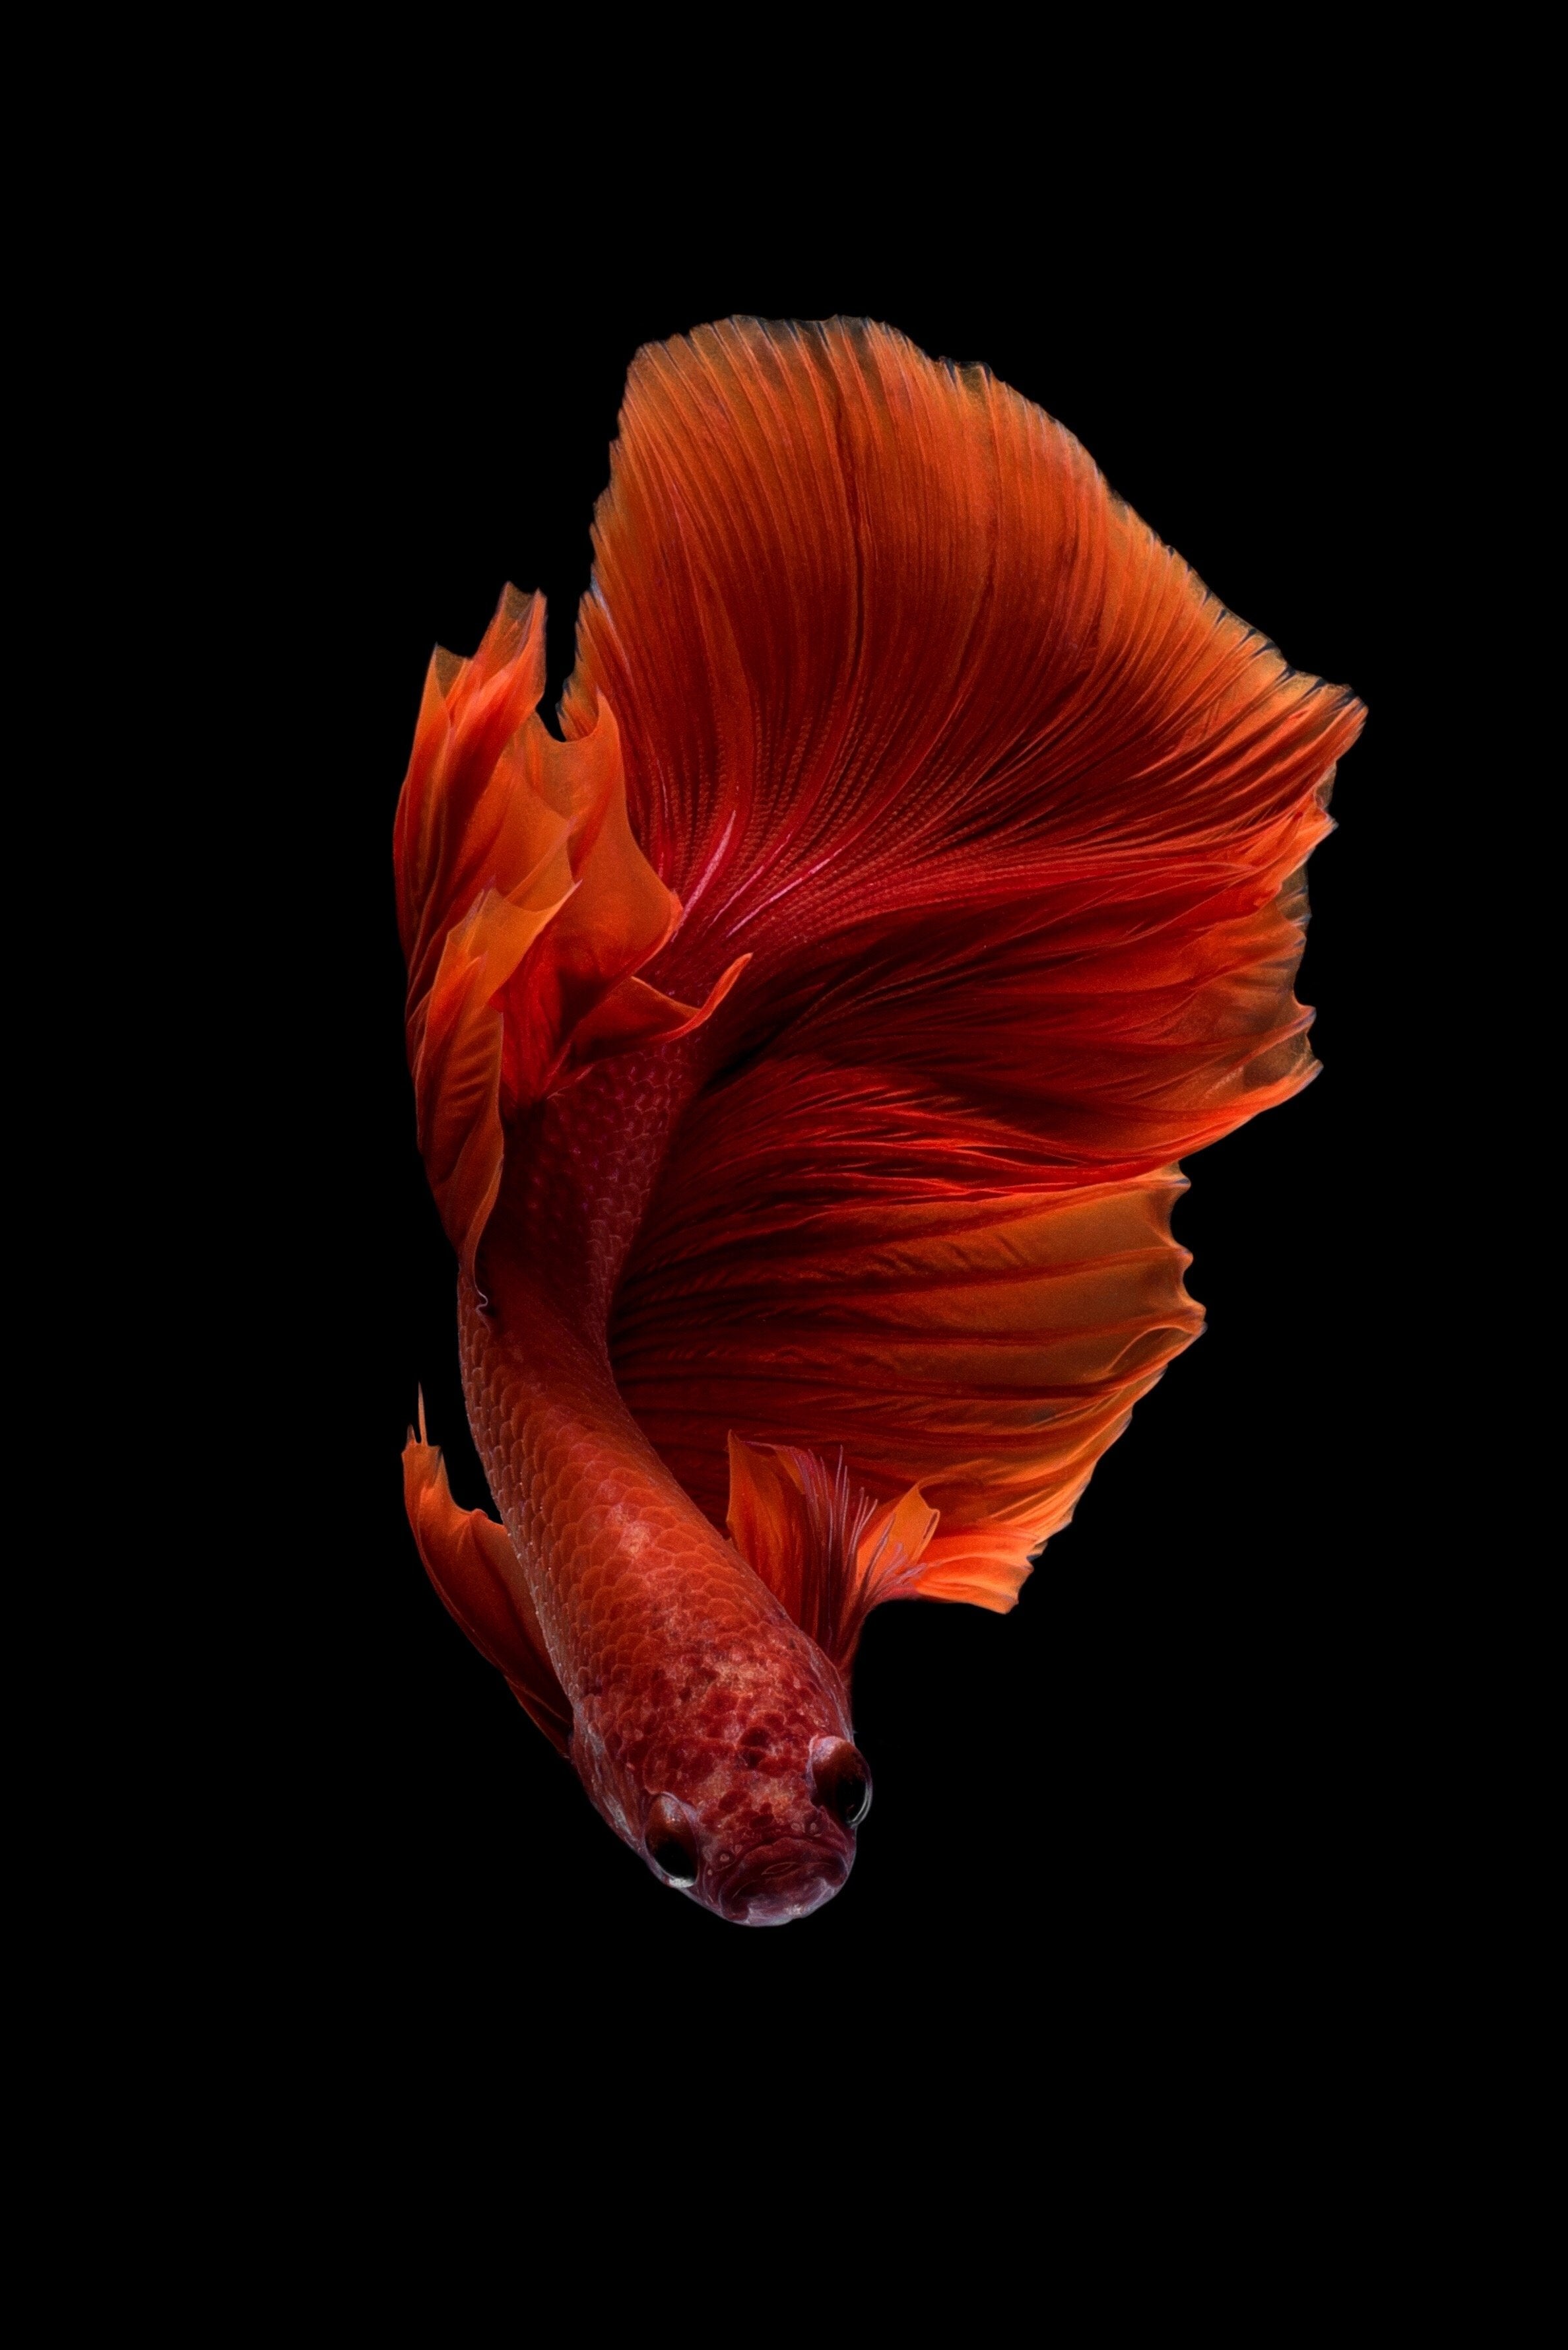 Super Red Halfmoon Betta Fish in Aquarium with blackground